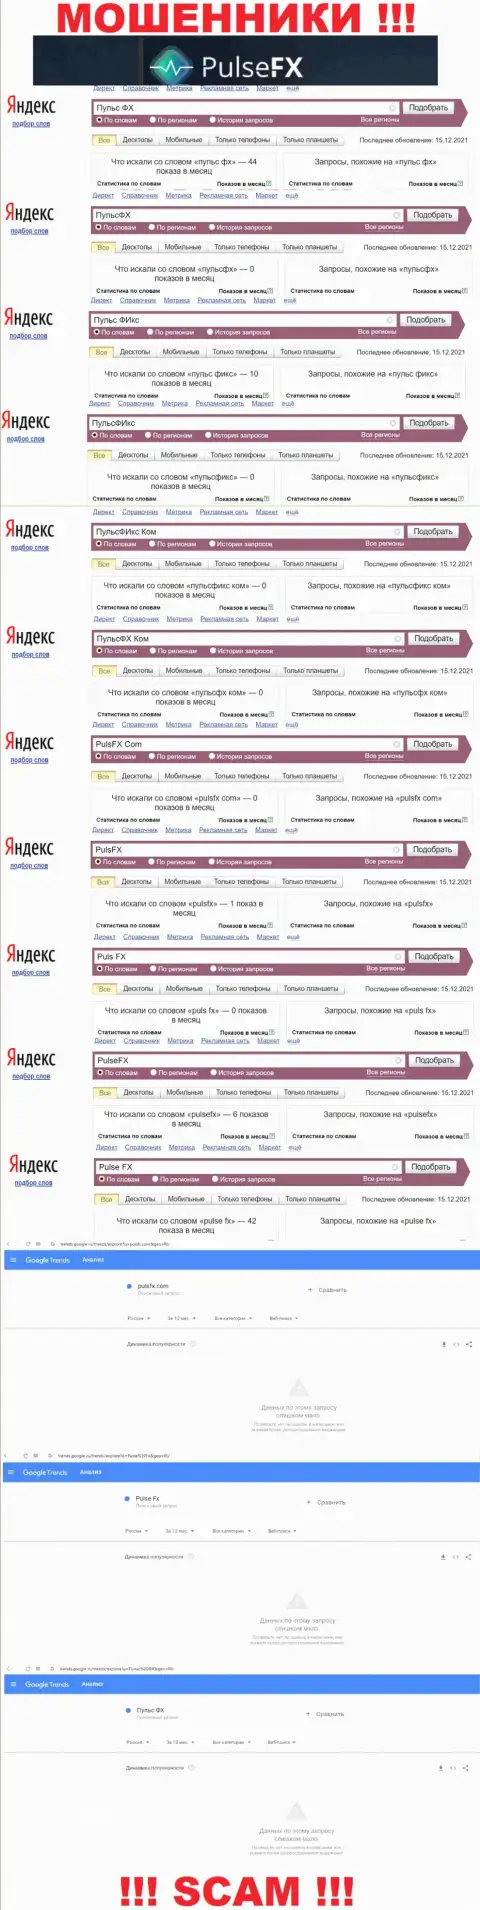 Количество онлайн запросов в глобальной интернет сети по бренду мошенников PulseFX